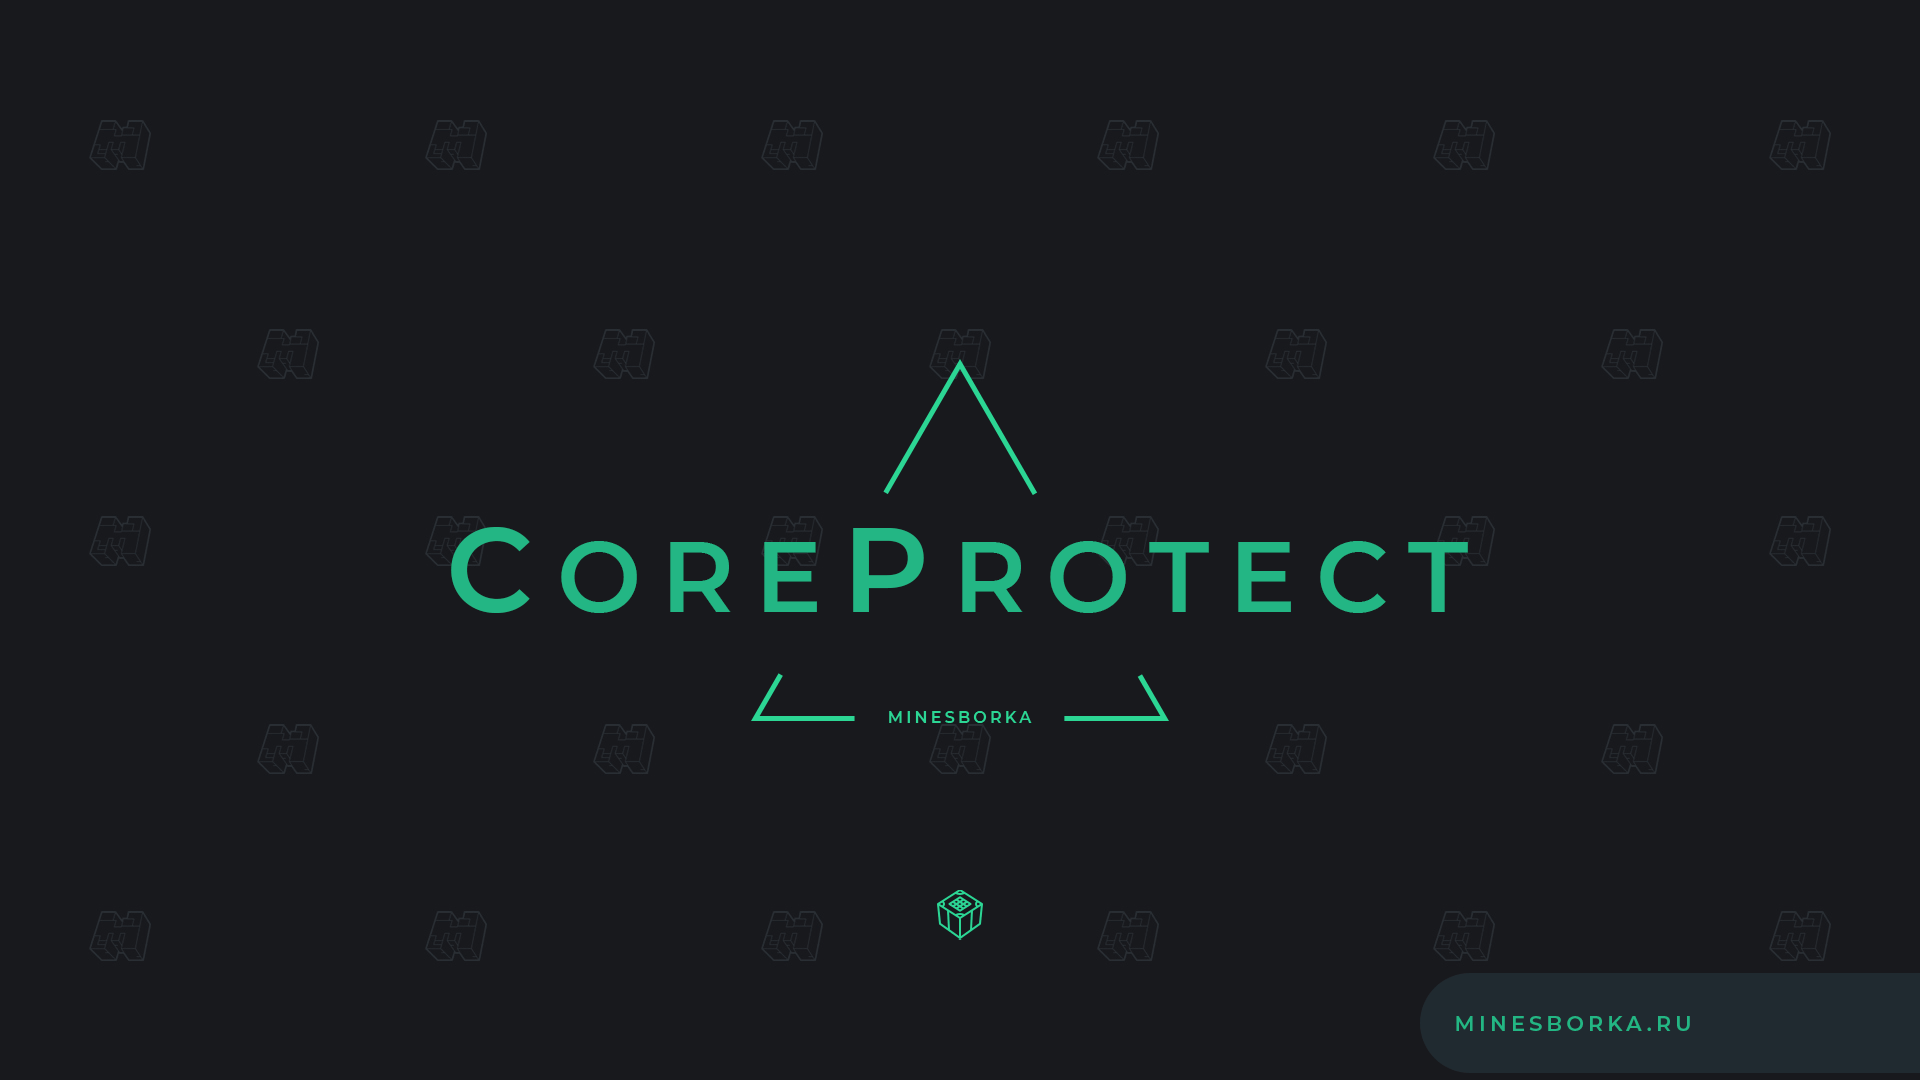 Скачать плагин CoreProtect | Просмотр кто ставил или ломал блоки на сервере Майнкрафт 1.8-1.18